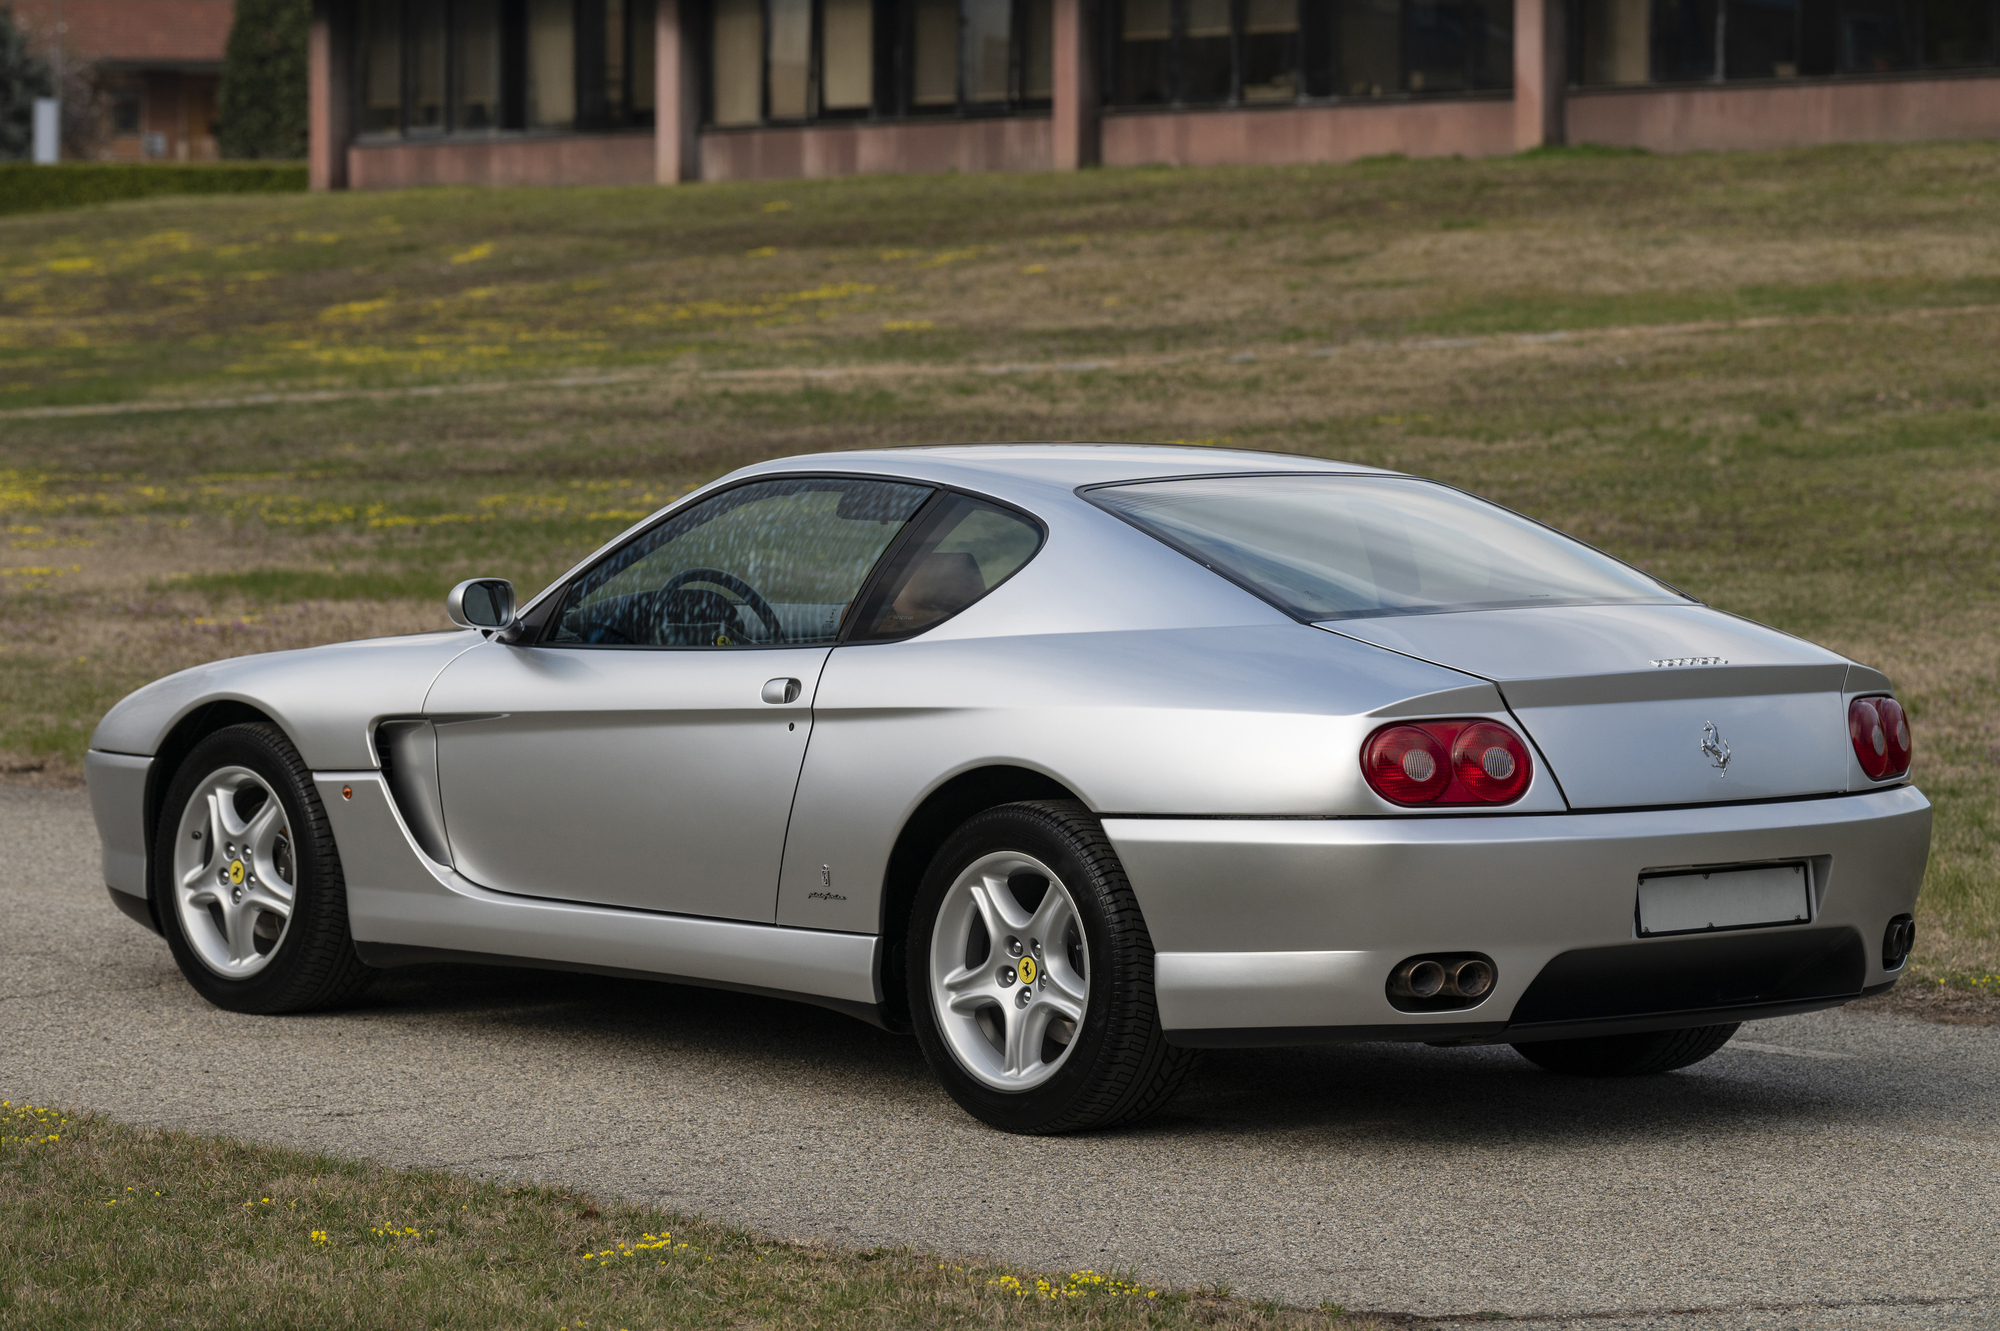 Ferrari 456 GT 優雅修長的車身，視覺呈現賞心悅目， 相當適合作為旅行之用。